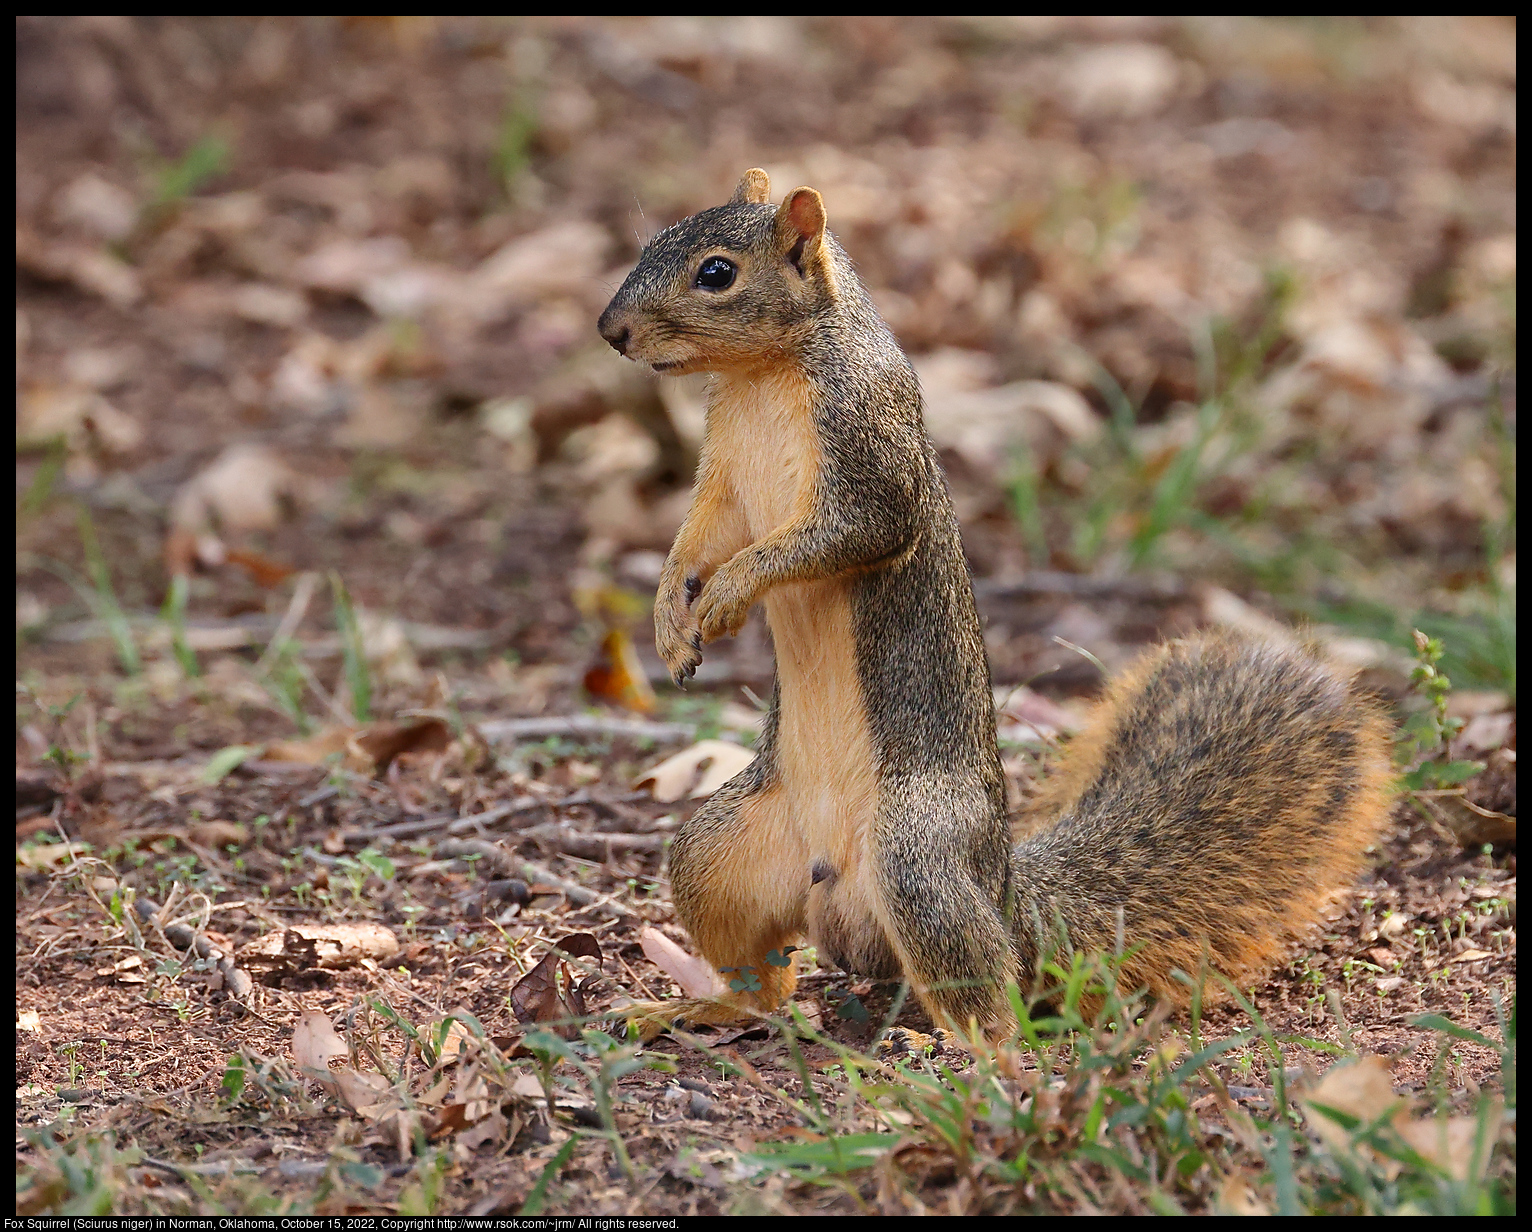 Fox Squirrel (Sciurus niger) in Norman, Oklahoma, October 15, 2022